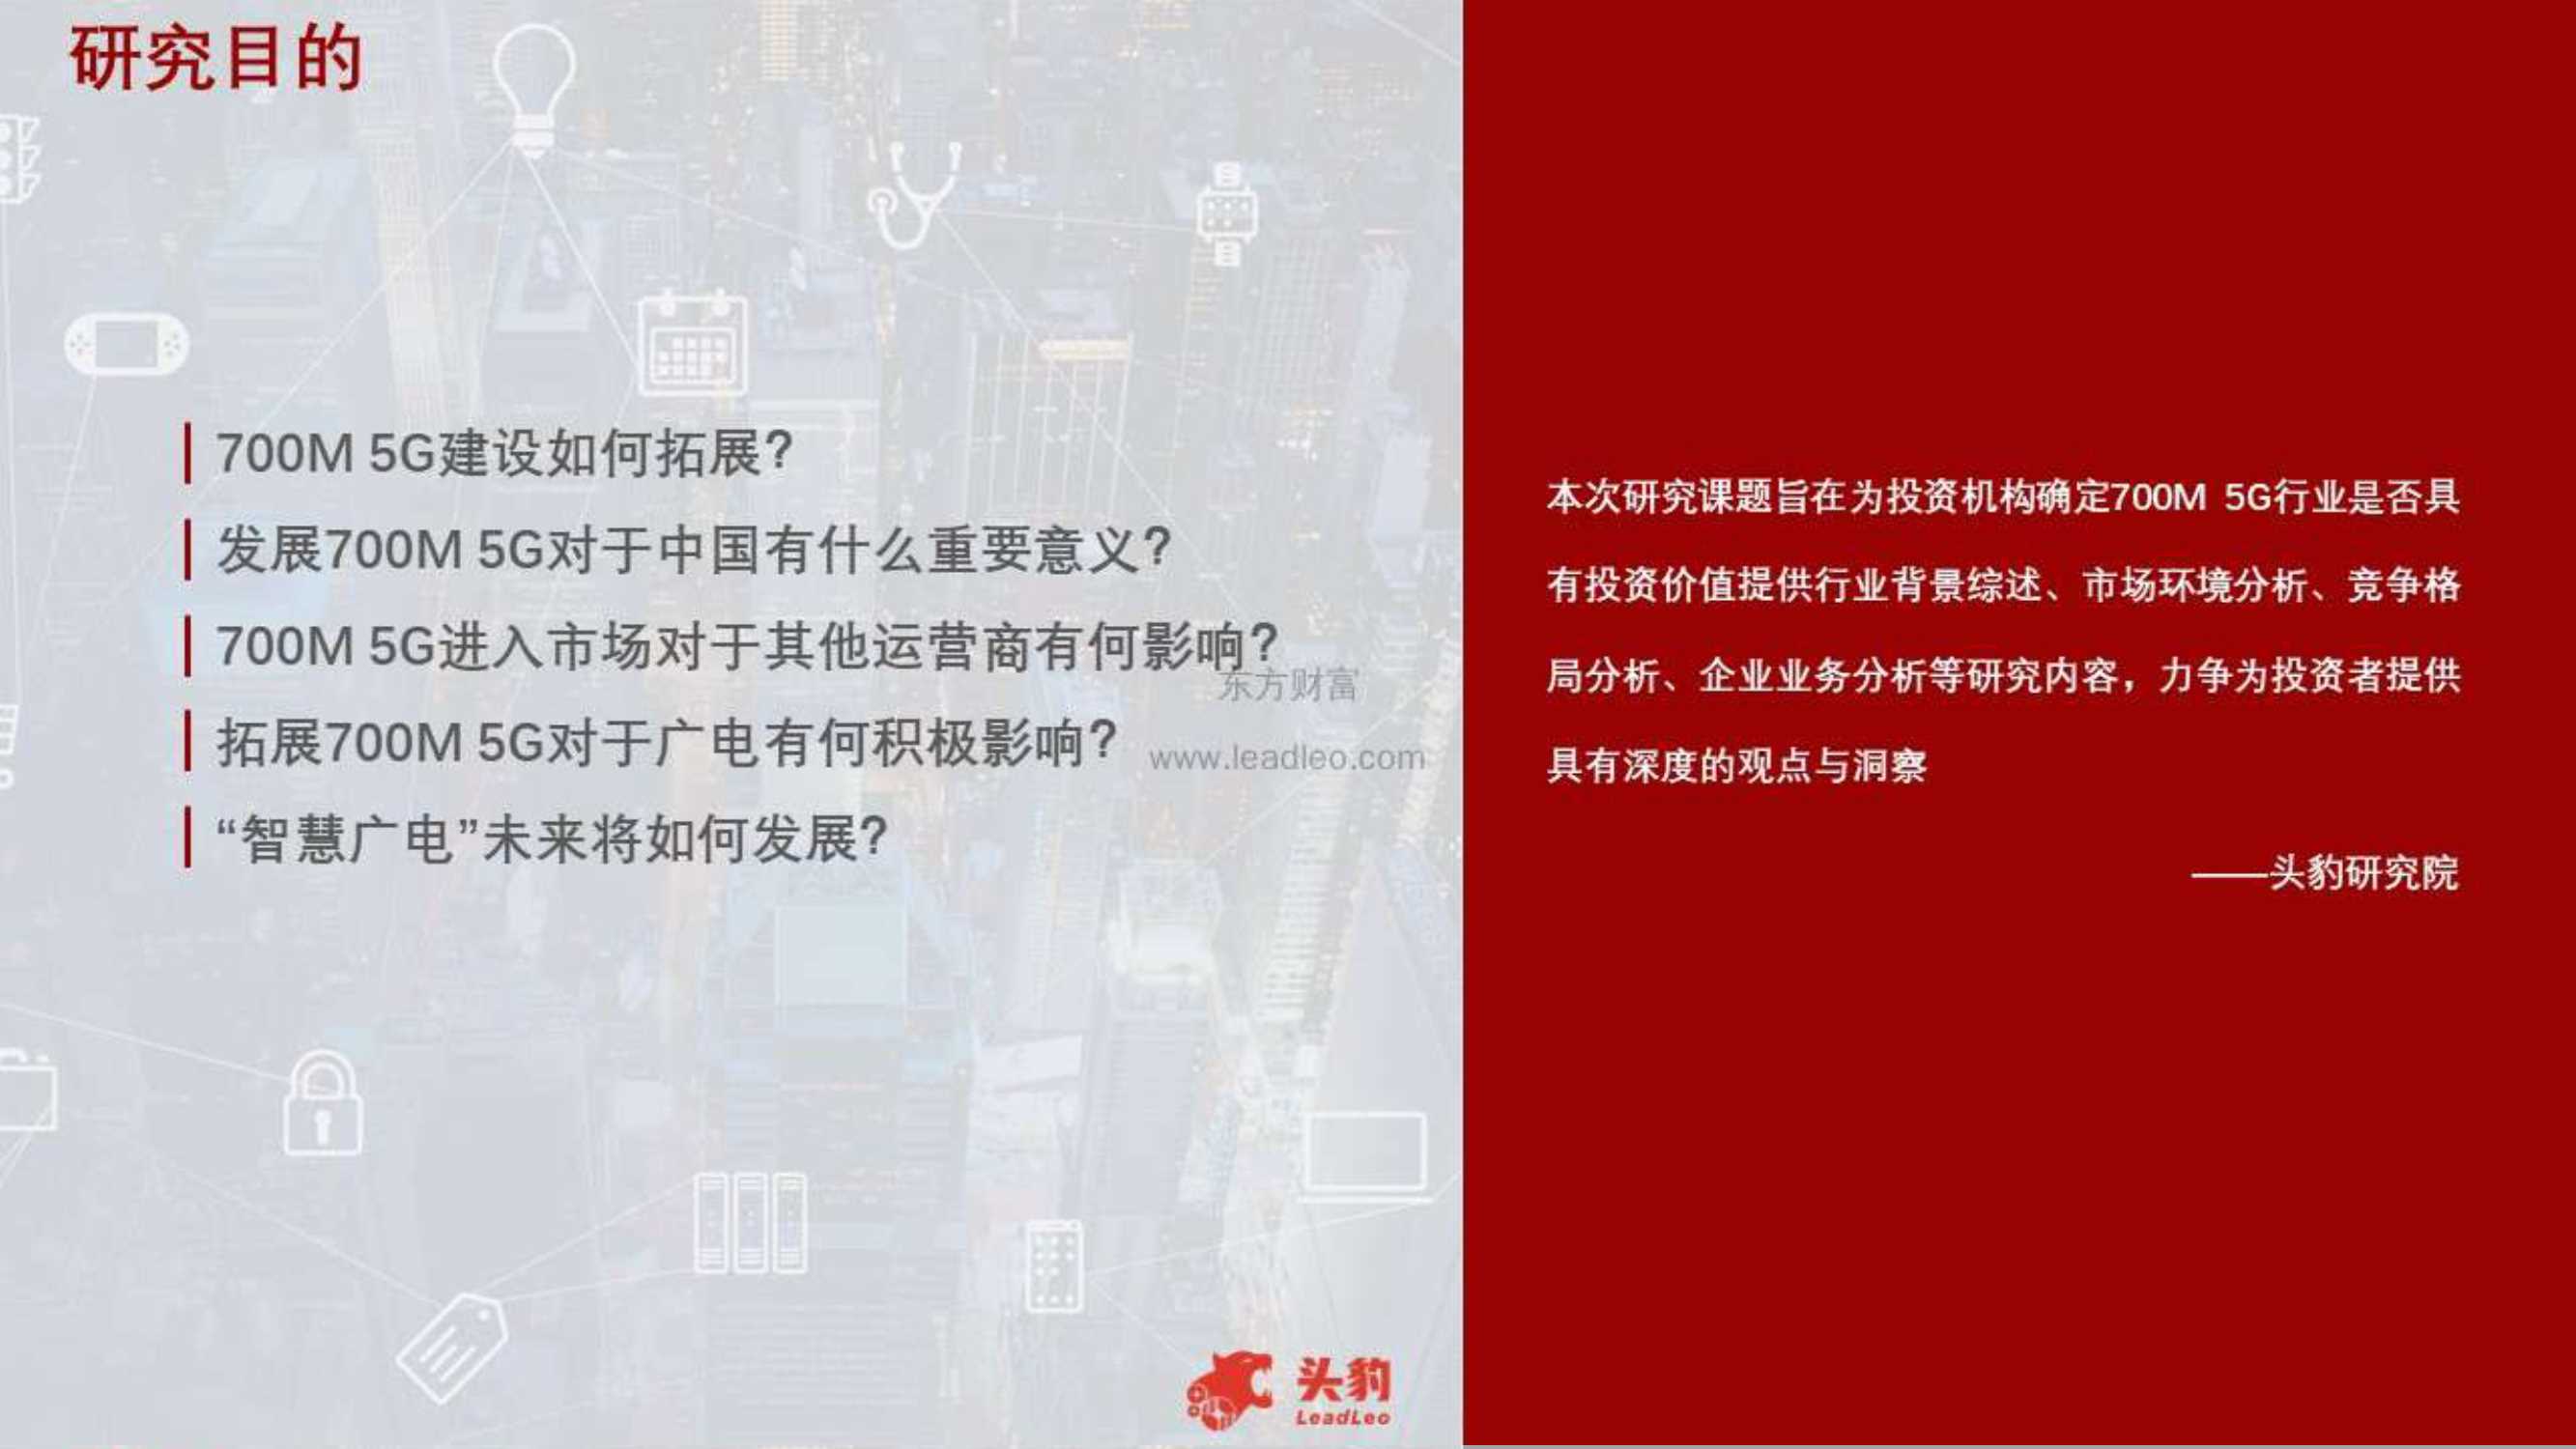 头豹研究院-行业概览——中国5G频段（700M）及四大运营商竞争力深度分析-2021.12-41页